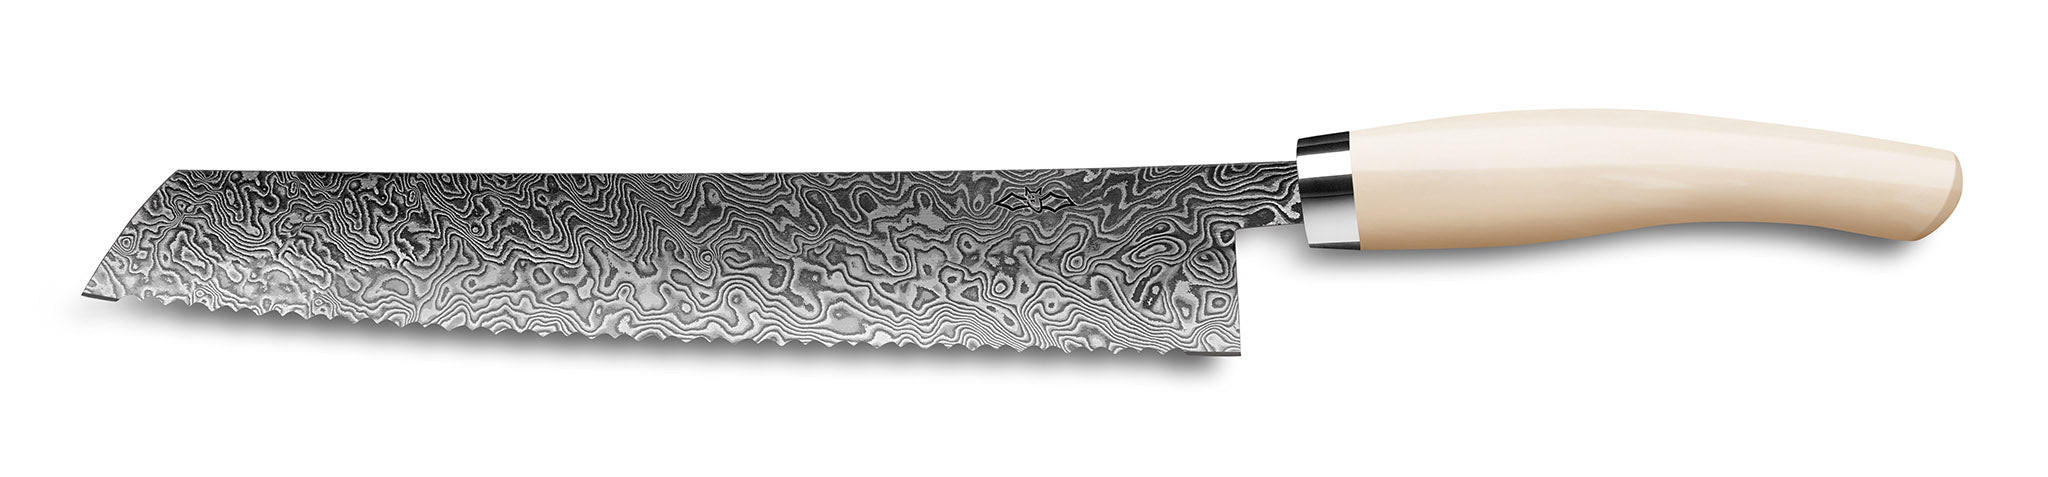 Brotmesser Exklusiv C90 von Nesmuk 180 mm mit Klinge aus handgeschmiedetem wildem Damast und elfenbeinfarbenem Griff aus Juma Ivory